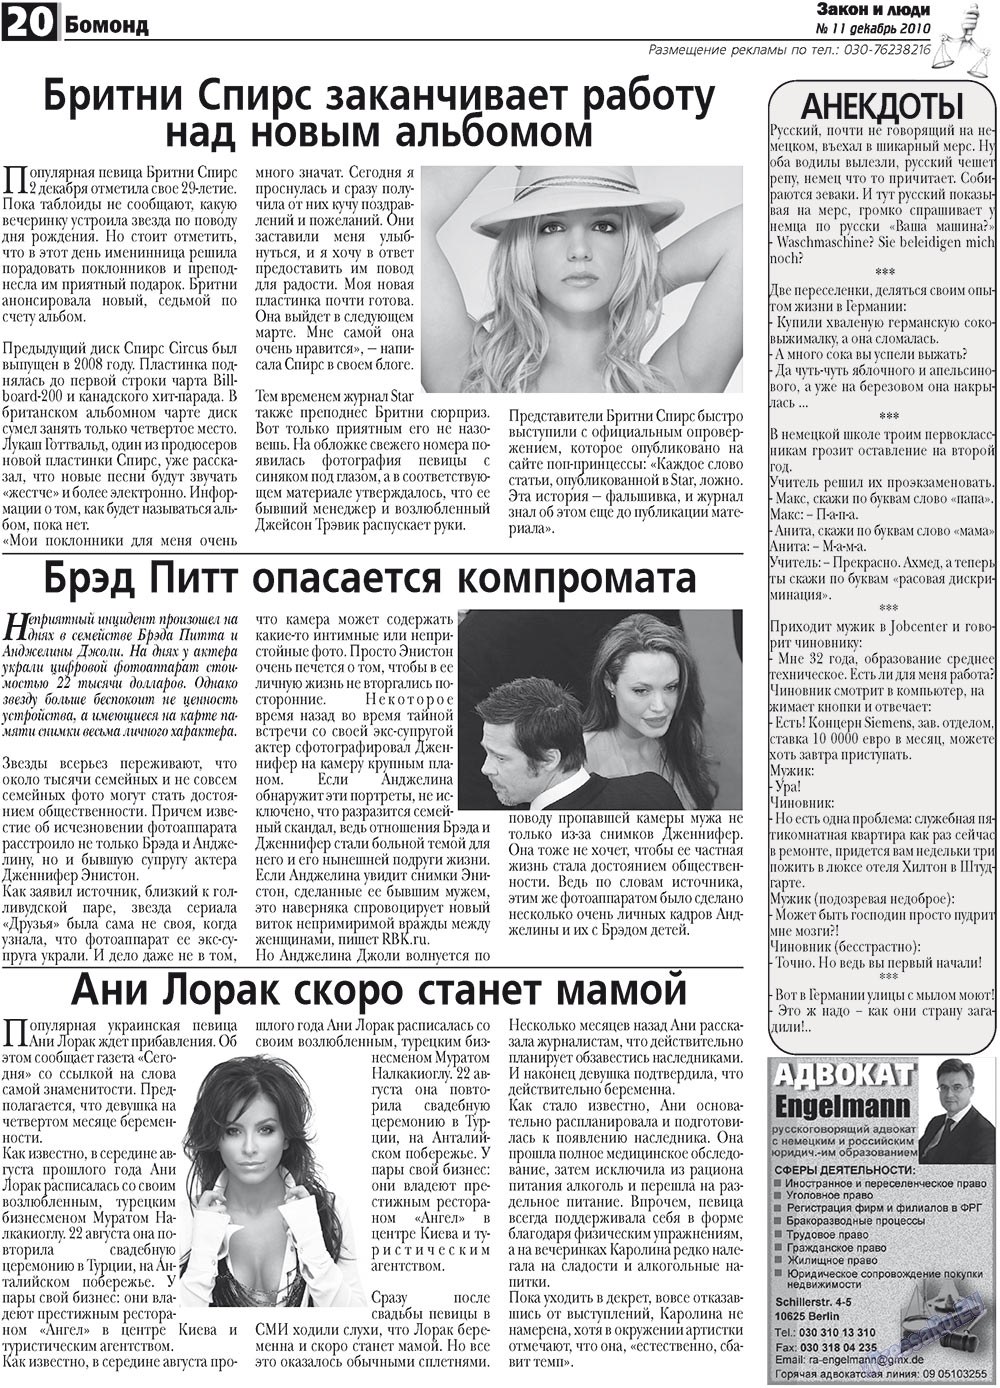 Закон и люди, газета. 2010 №11 стр.20